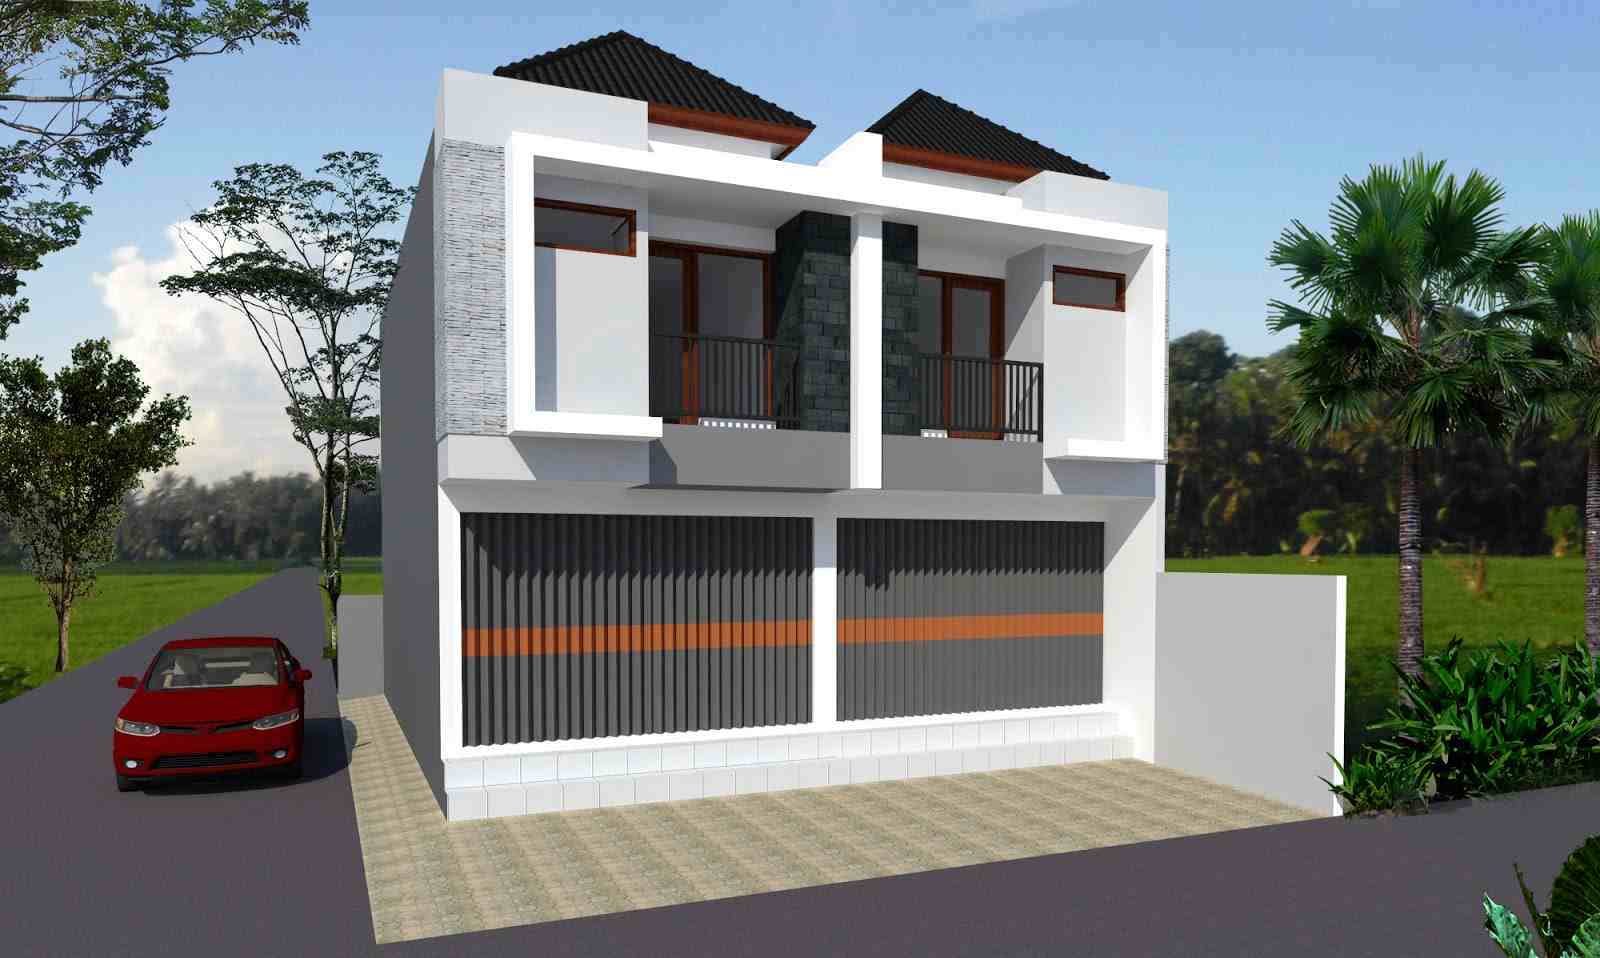 Rumah Minimalis 2 Lantai 2018 Terbaru - Informasi Desain dan Tipe Rumah